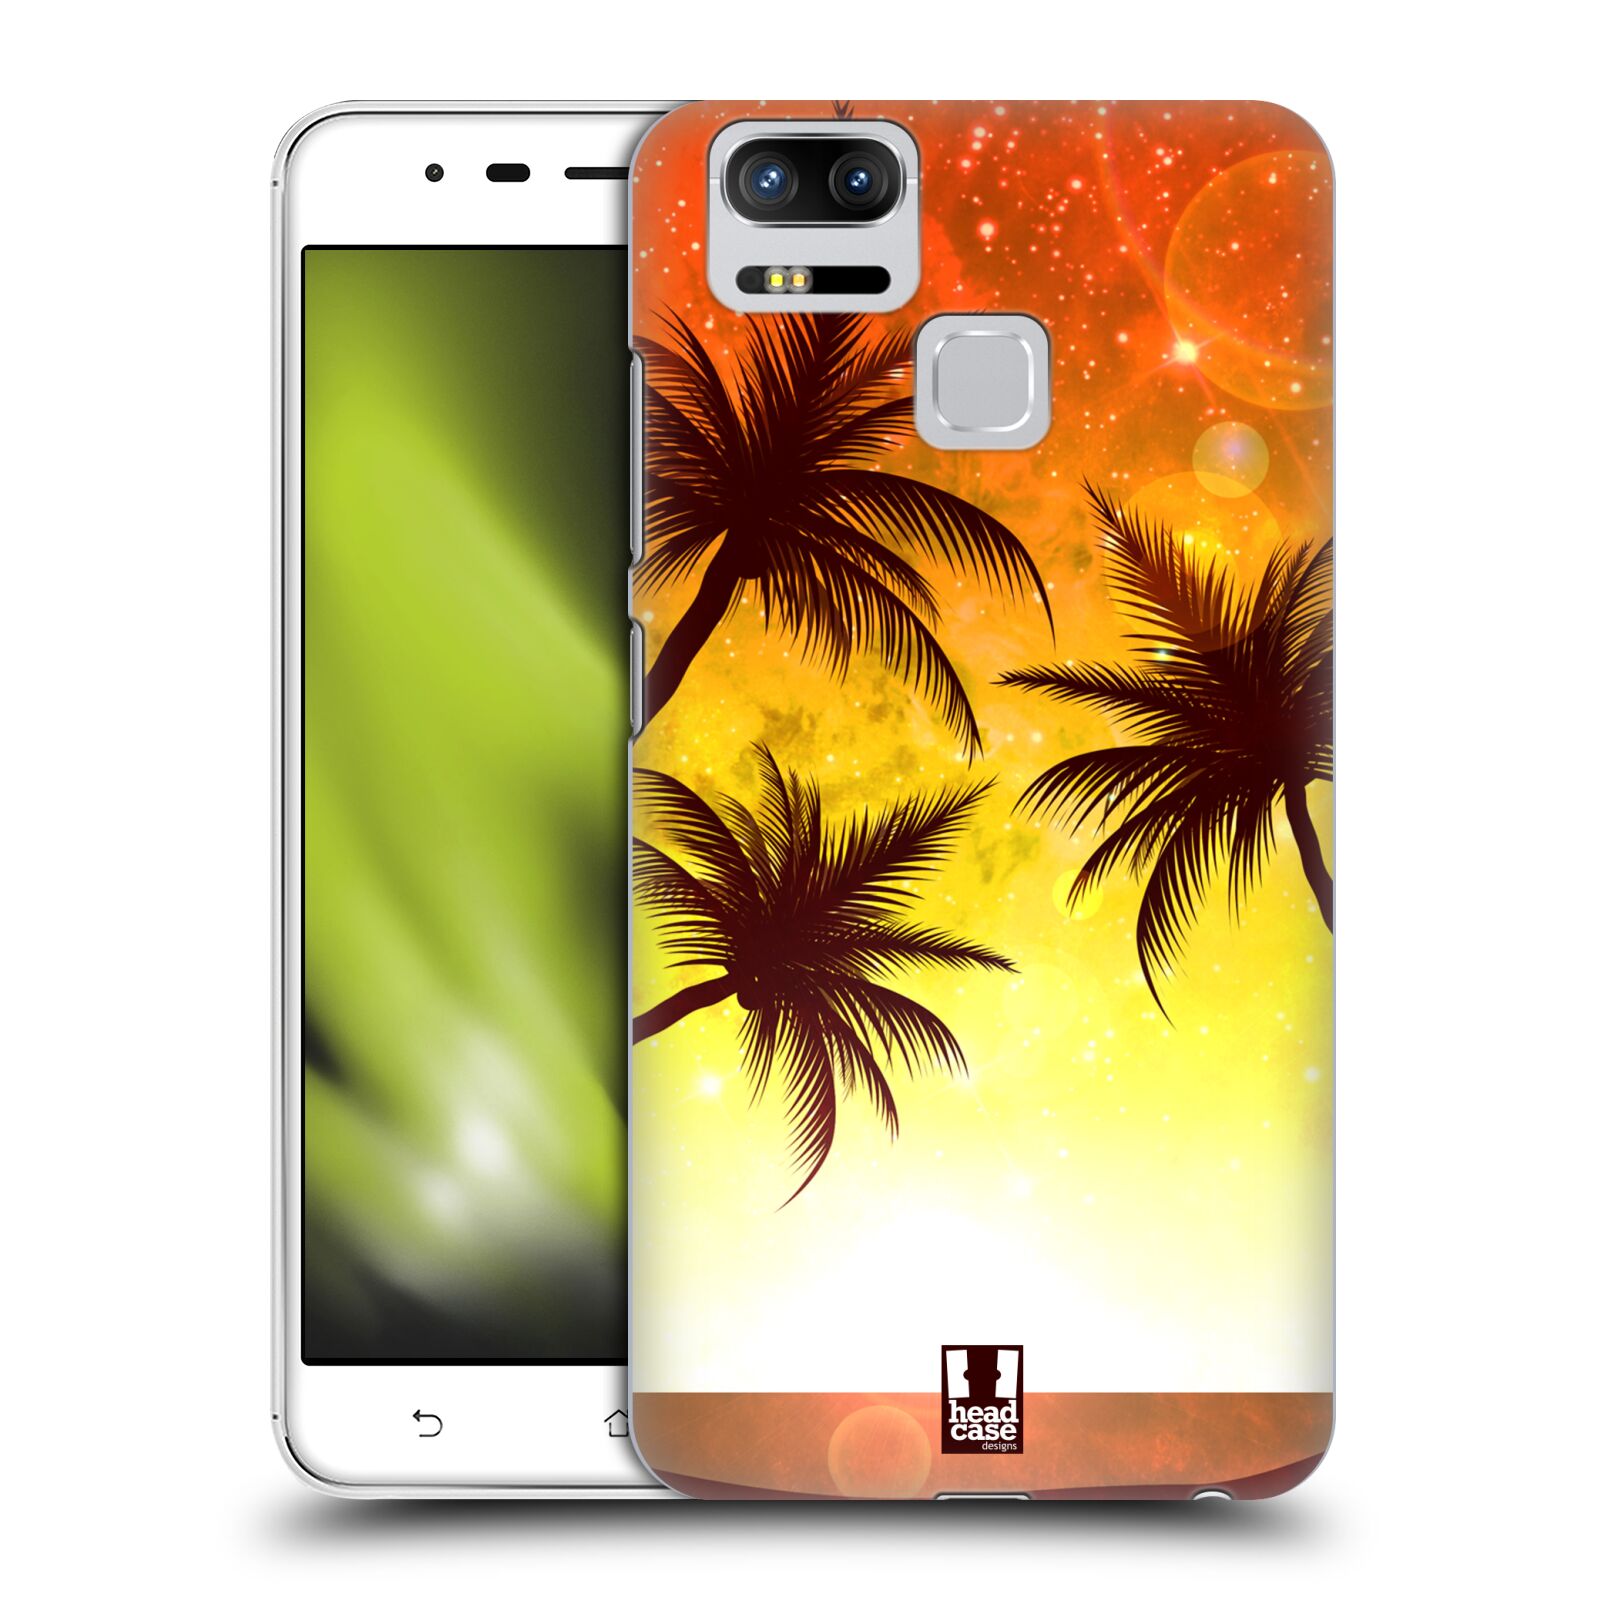 HEAD CASE plastový obal na mobil Asus Zenfone 3 Zoom ZE553KL vzor Kreslený motiv silueta moře a palmy ORANŽOVÁ